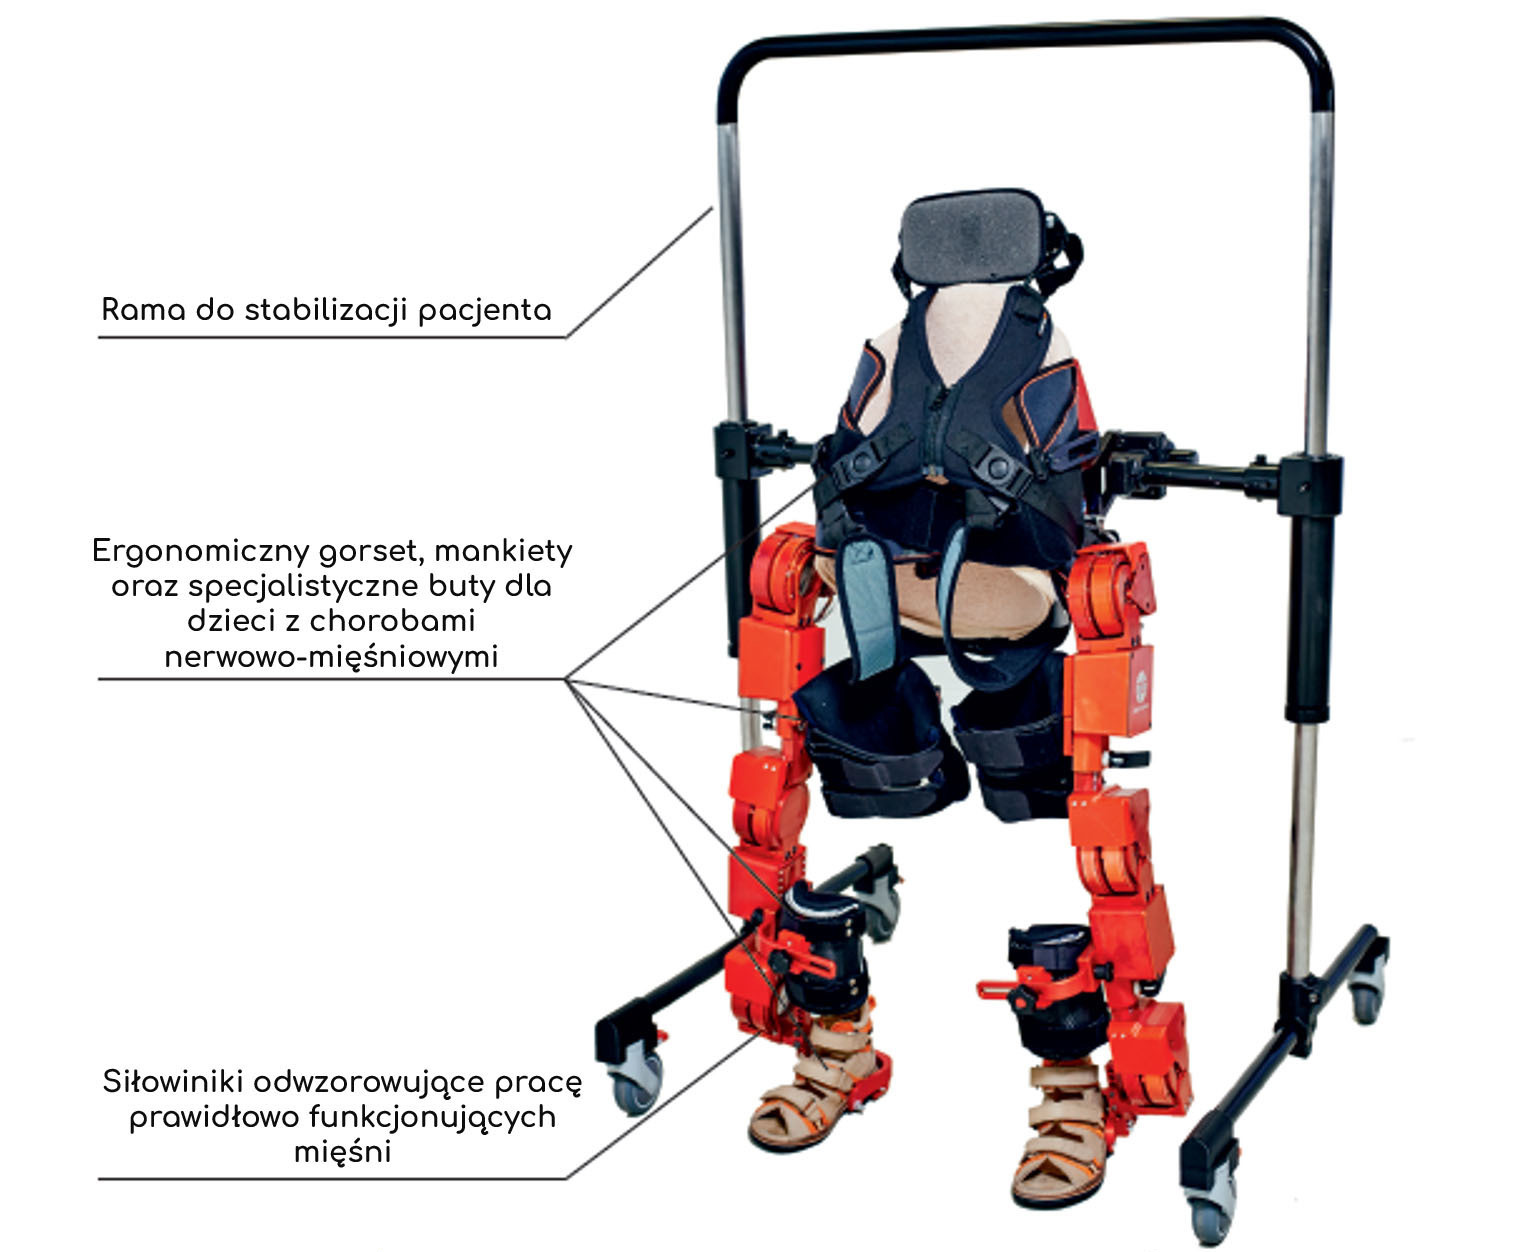 Marsi-Bionics-egzoszkielet-rehabilitacyjny-dane-techniczne-skyfi